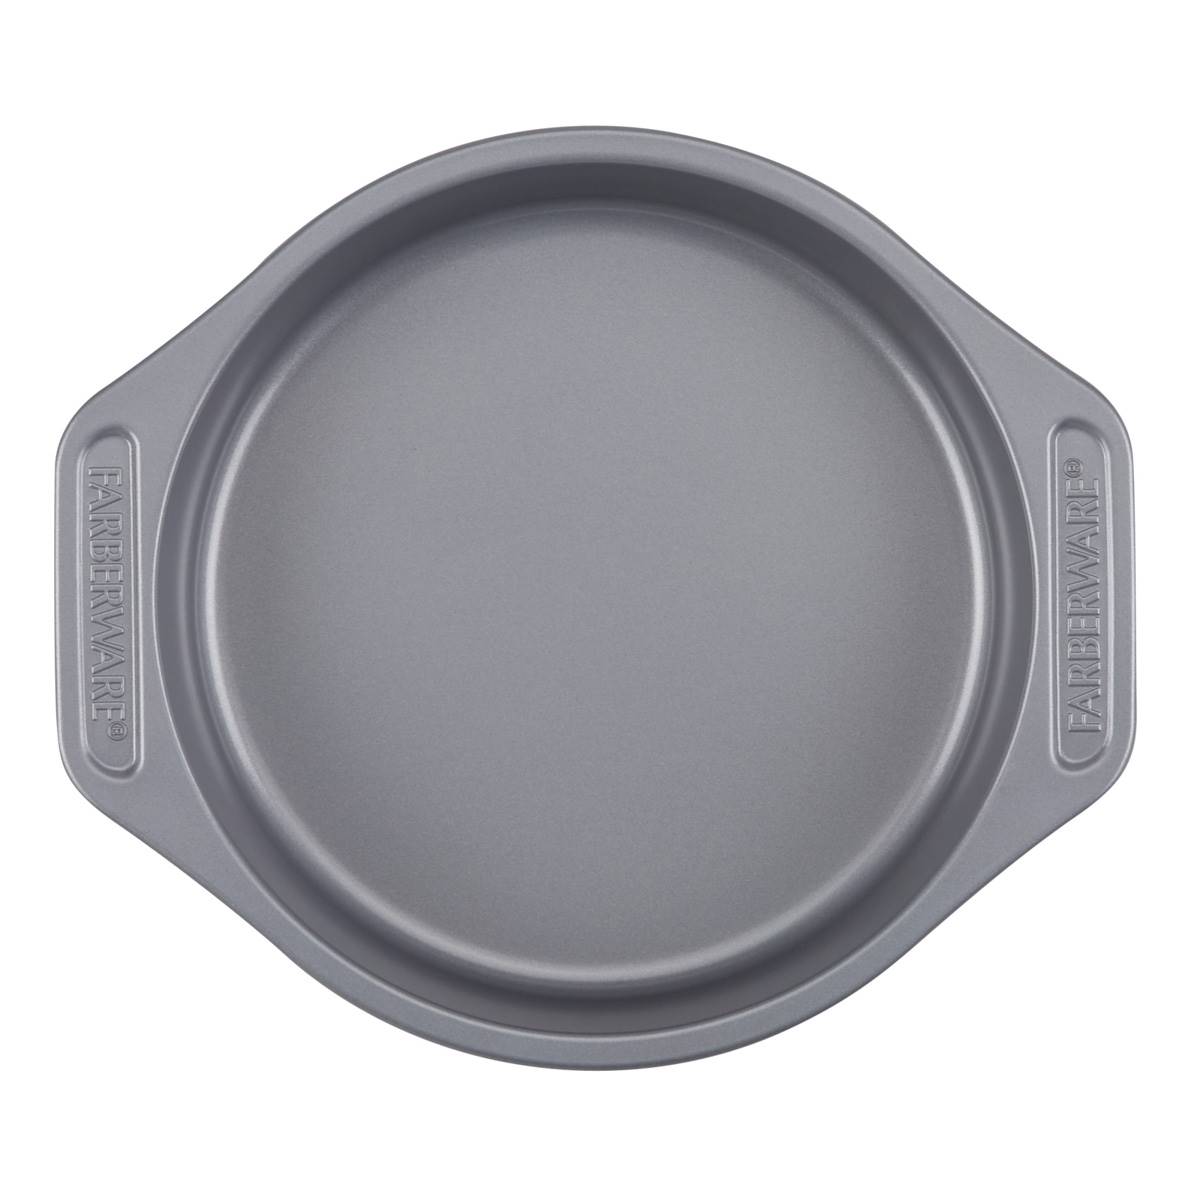 Farberware(R) 4pc. Grey Non-Stick Bakeware Set